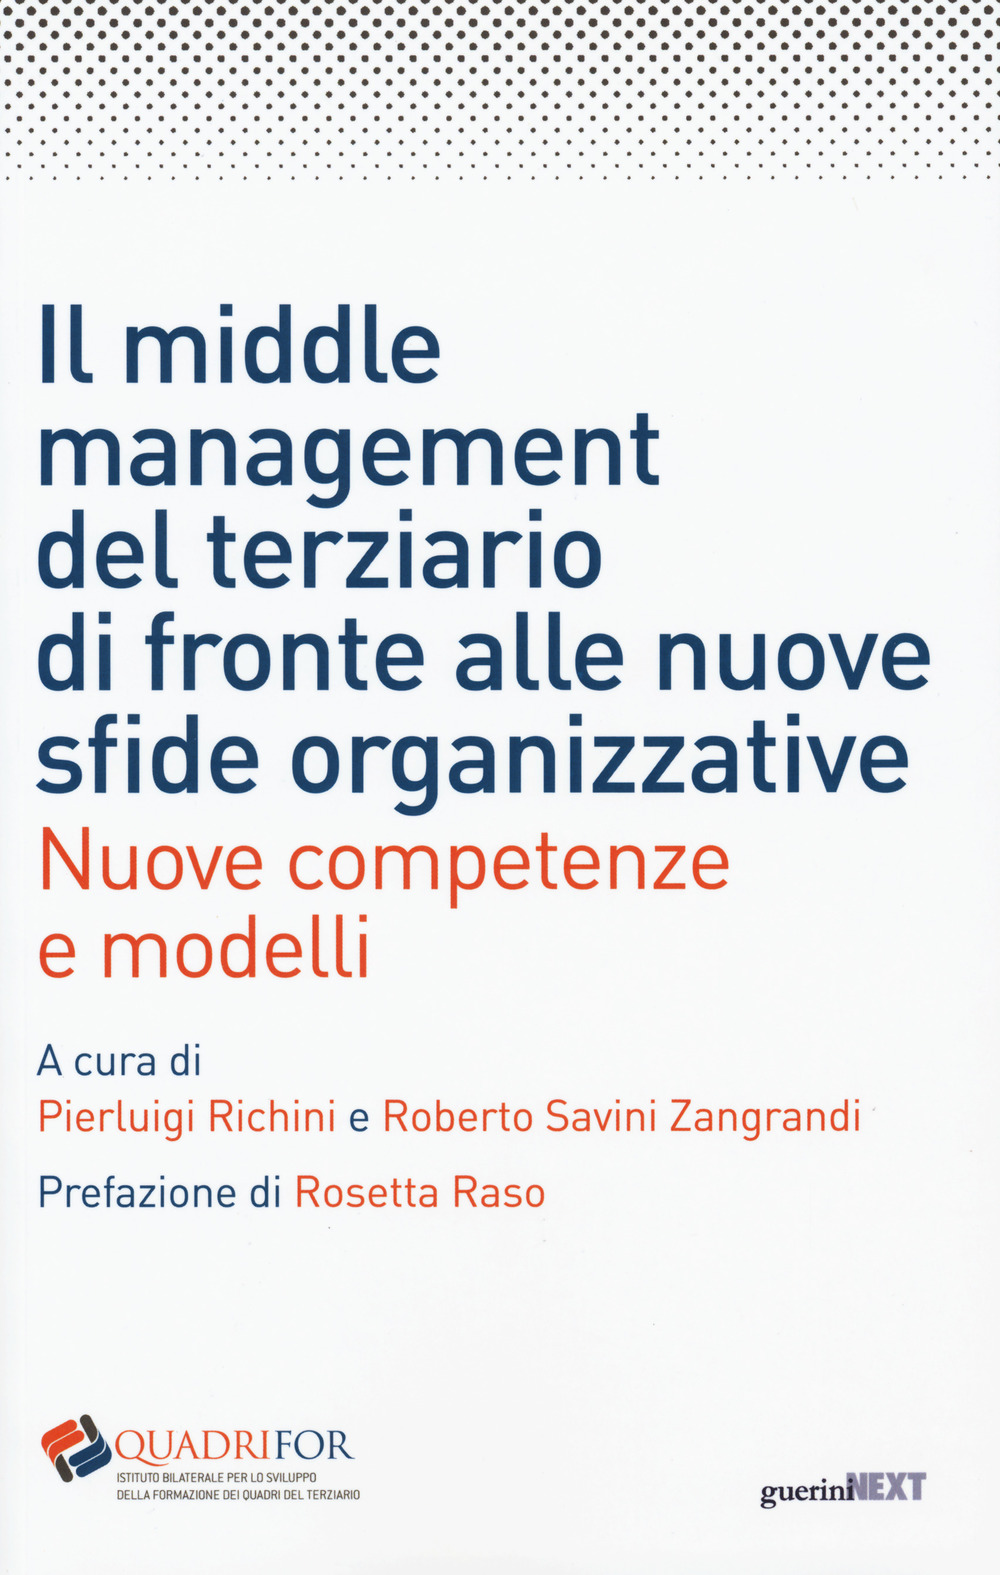 Il middle management del terziario di fronte alle nuove sfide organizzative. Nuove competenze e modelli